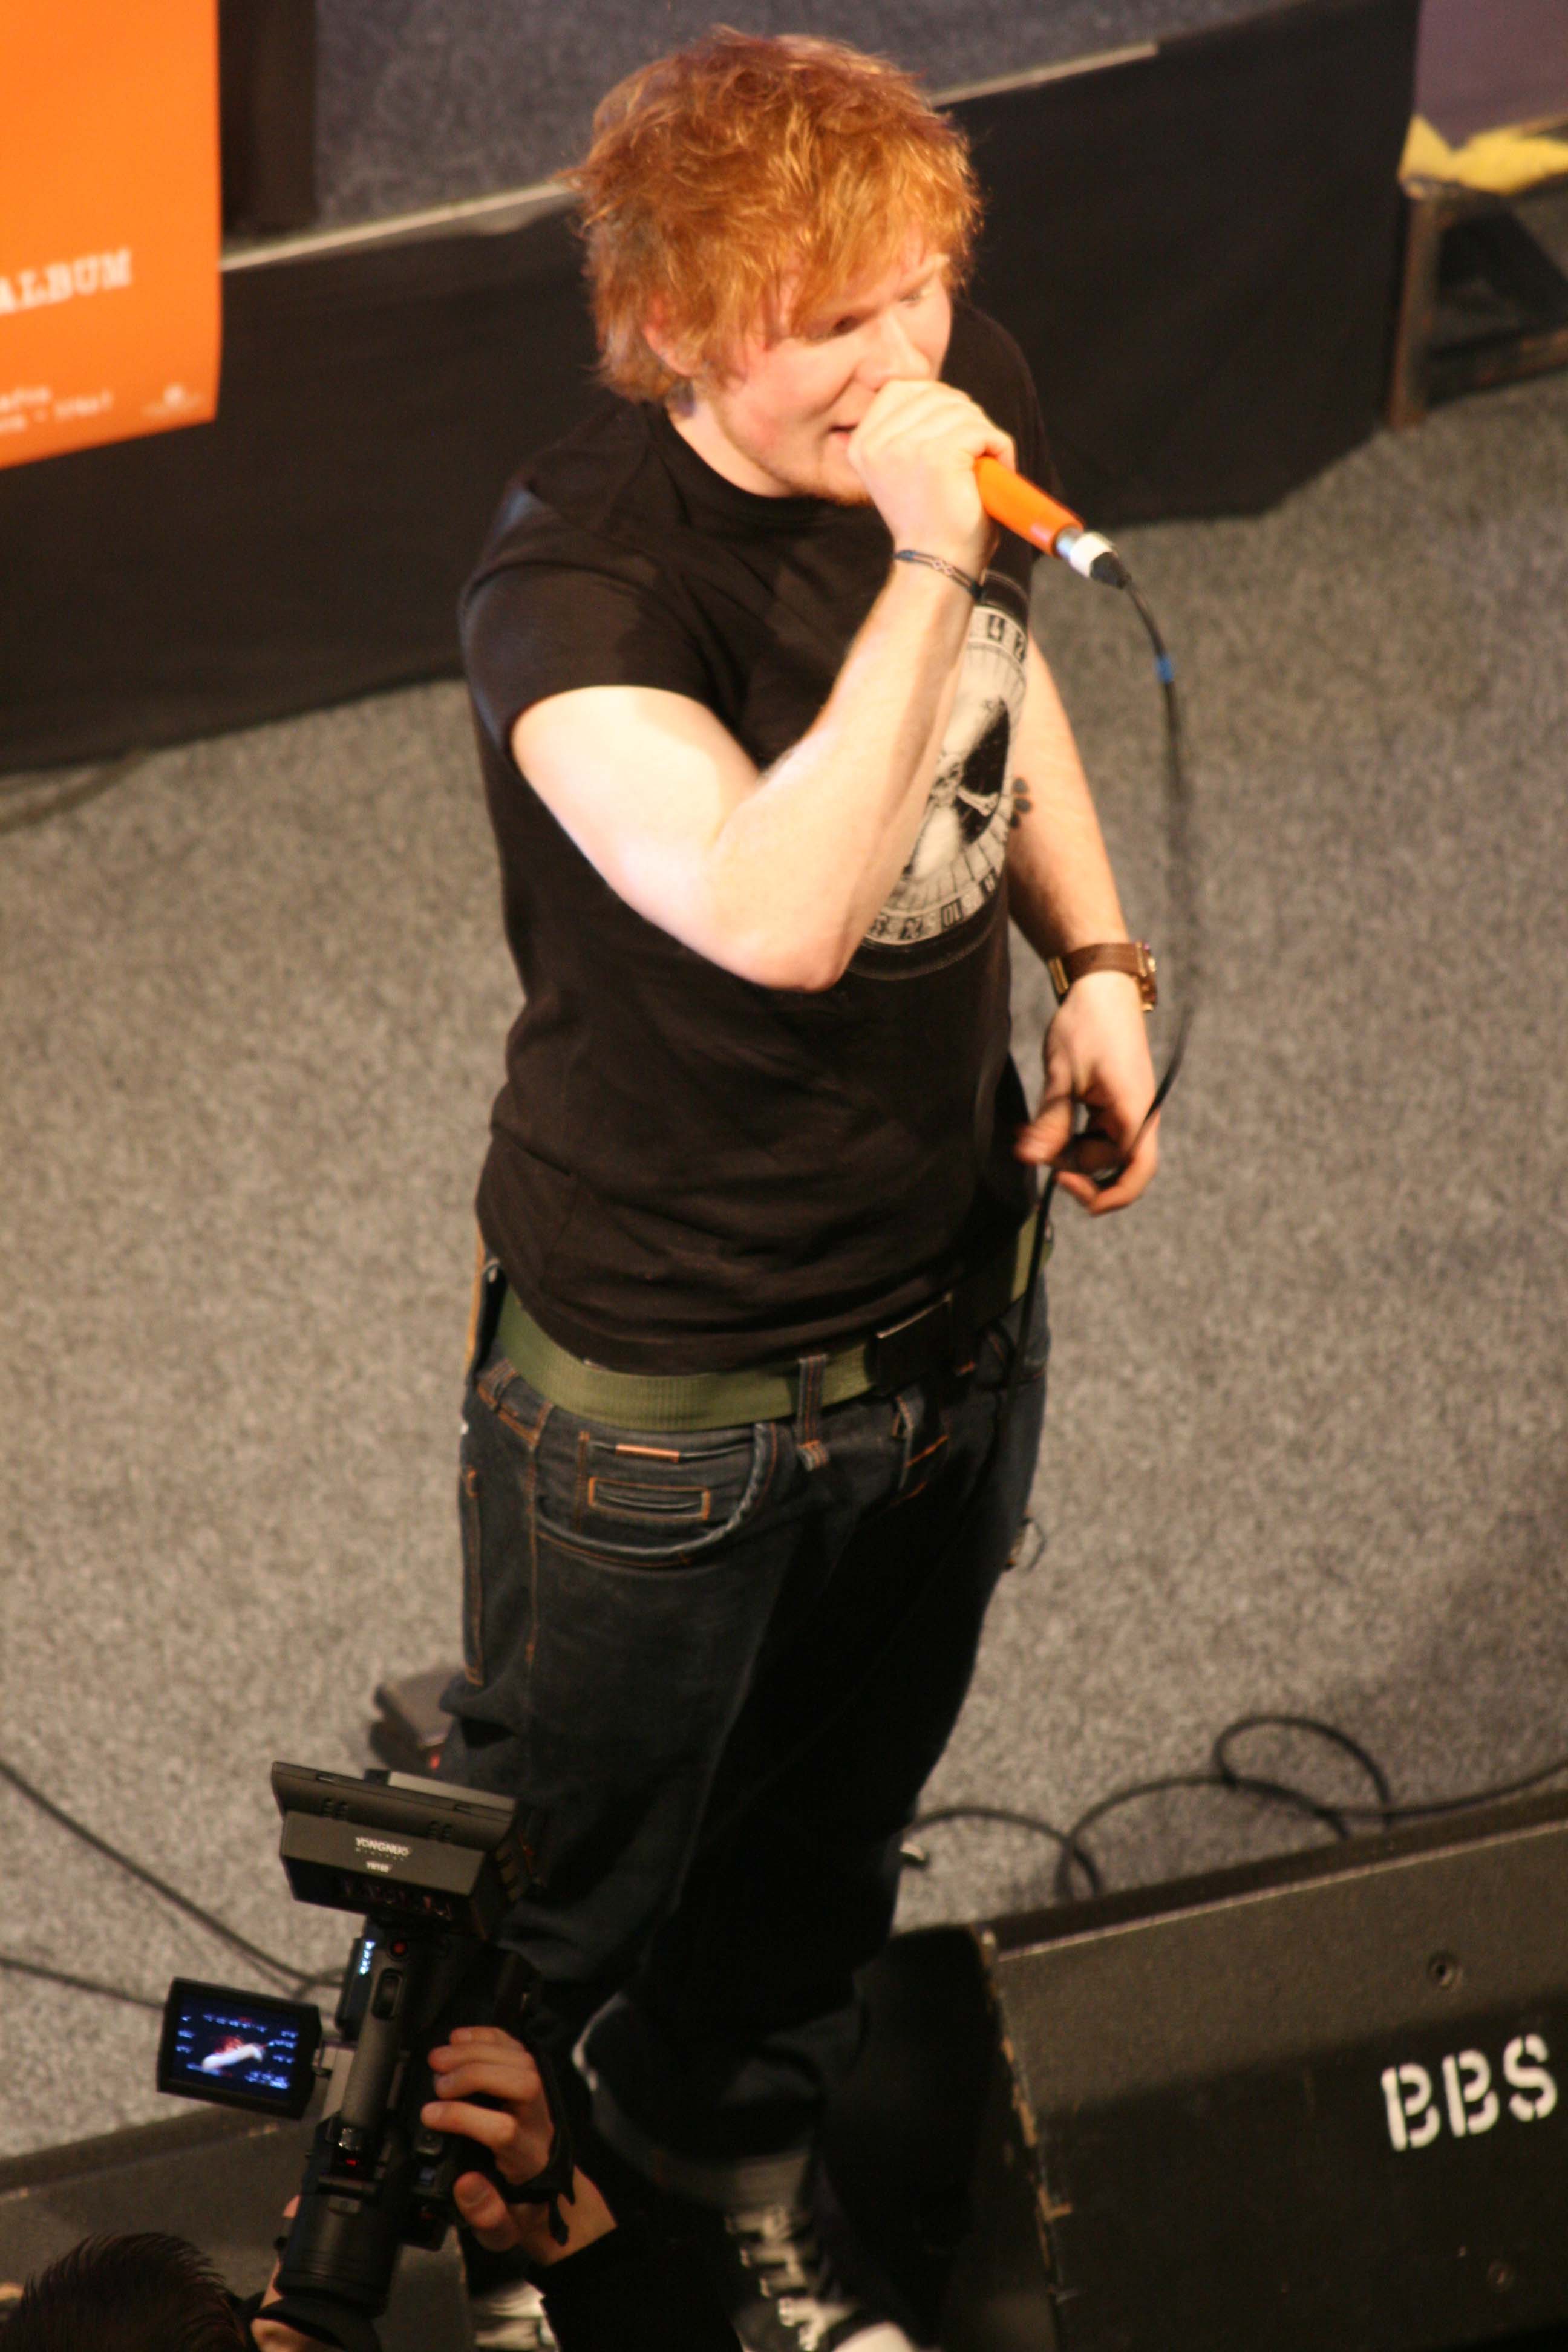 Ed Sheeran live performance at Alexa Berlin